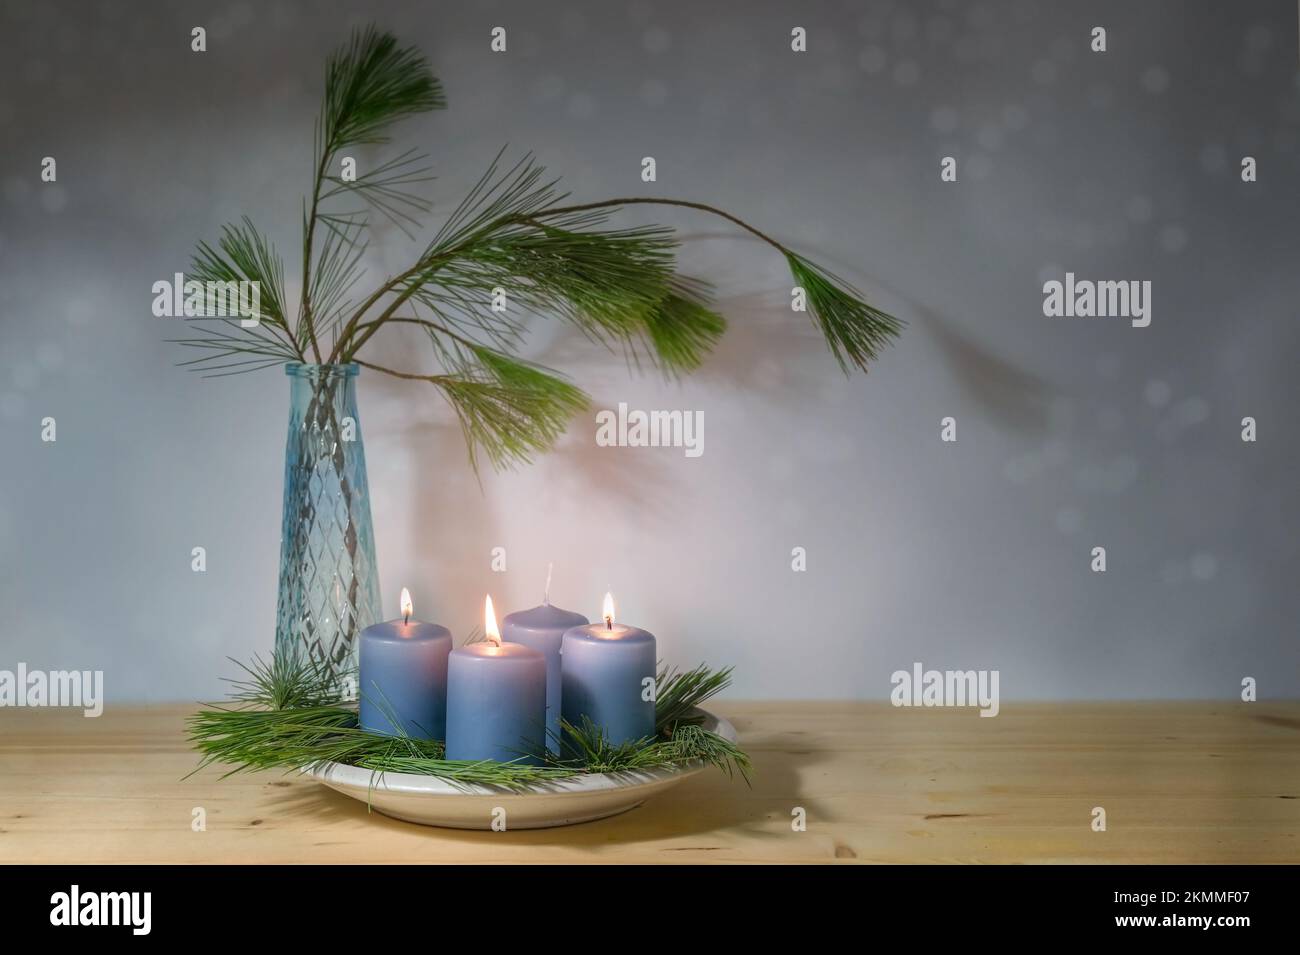 Candele blu, tre accese per il terzo avvento, vaso con rami di pino, decorazione moderna nella stagione natalizia, spazio copia, focus selezionato, na Foto Stock